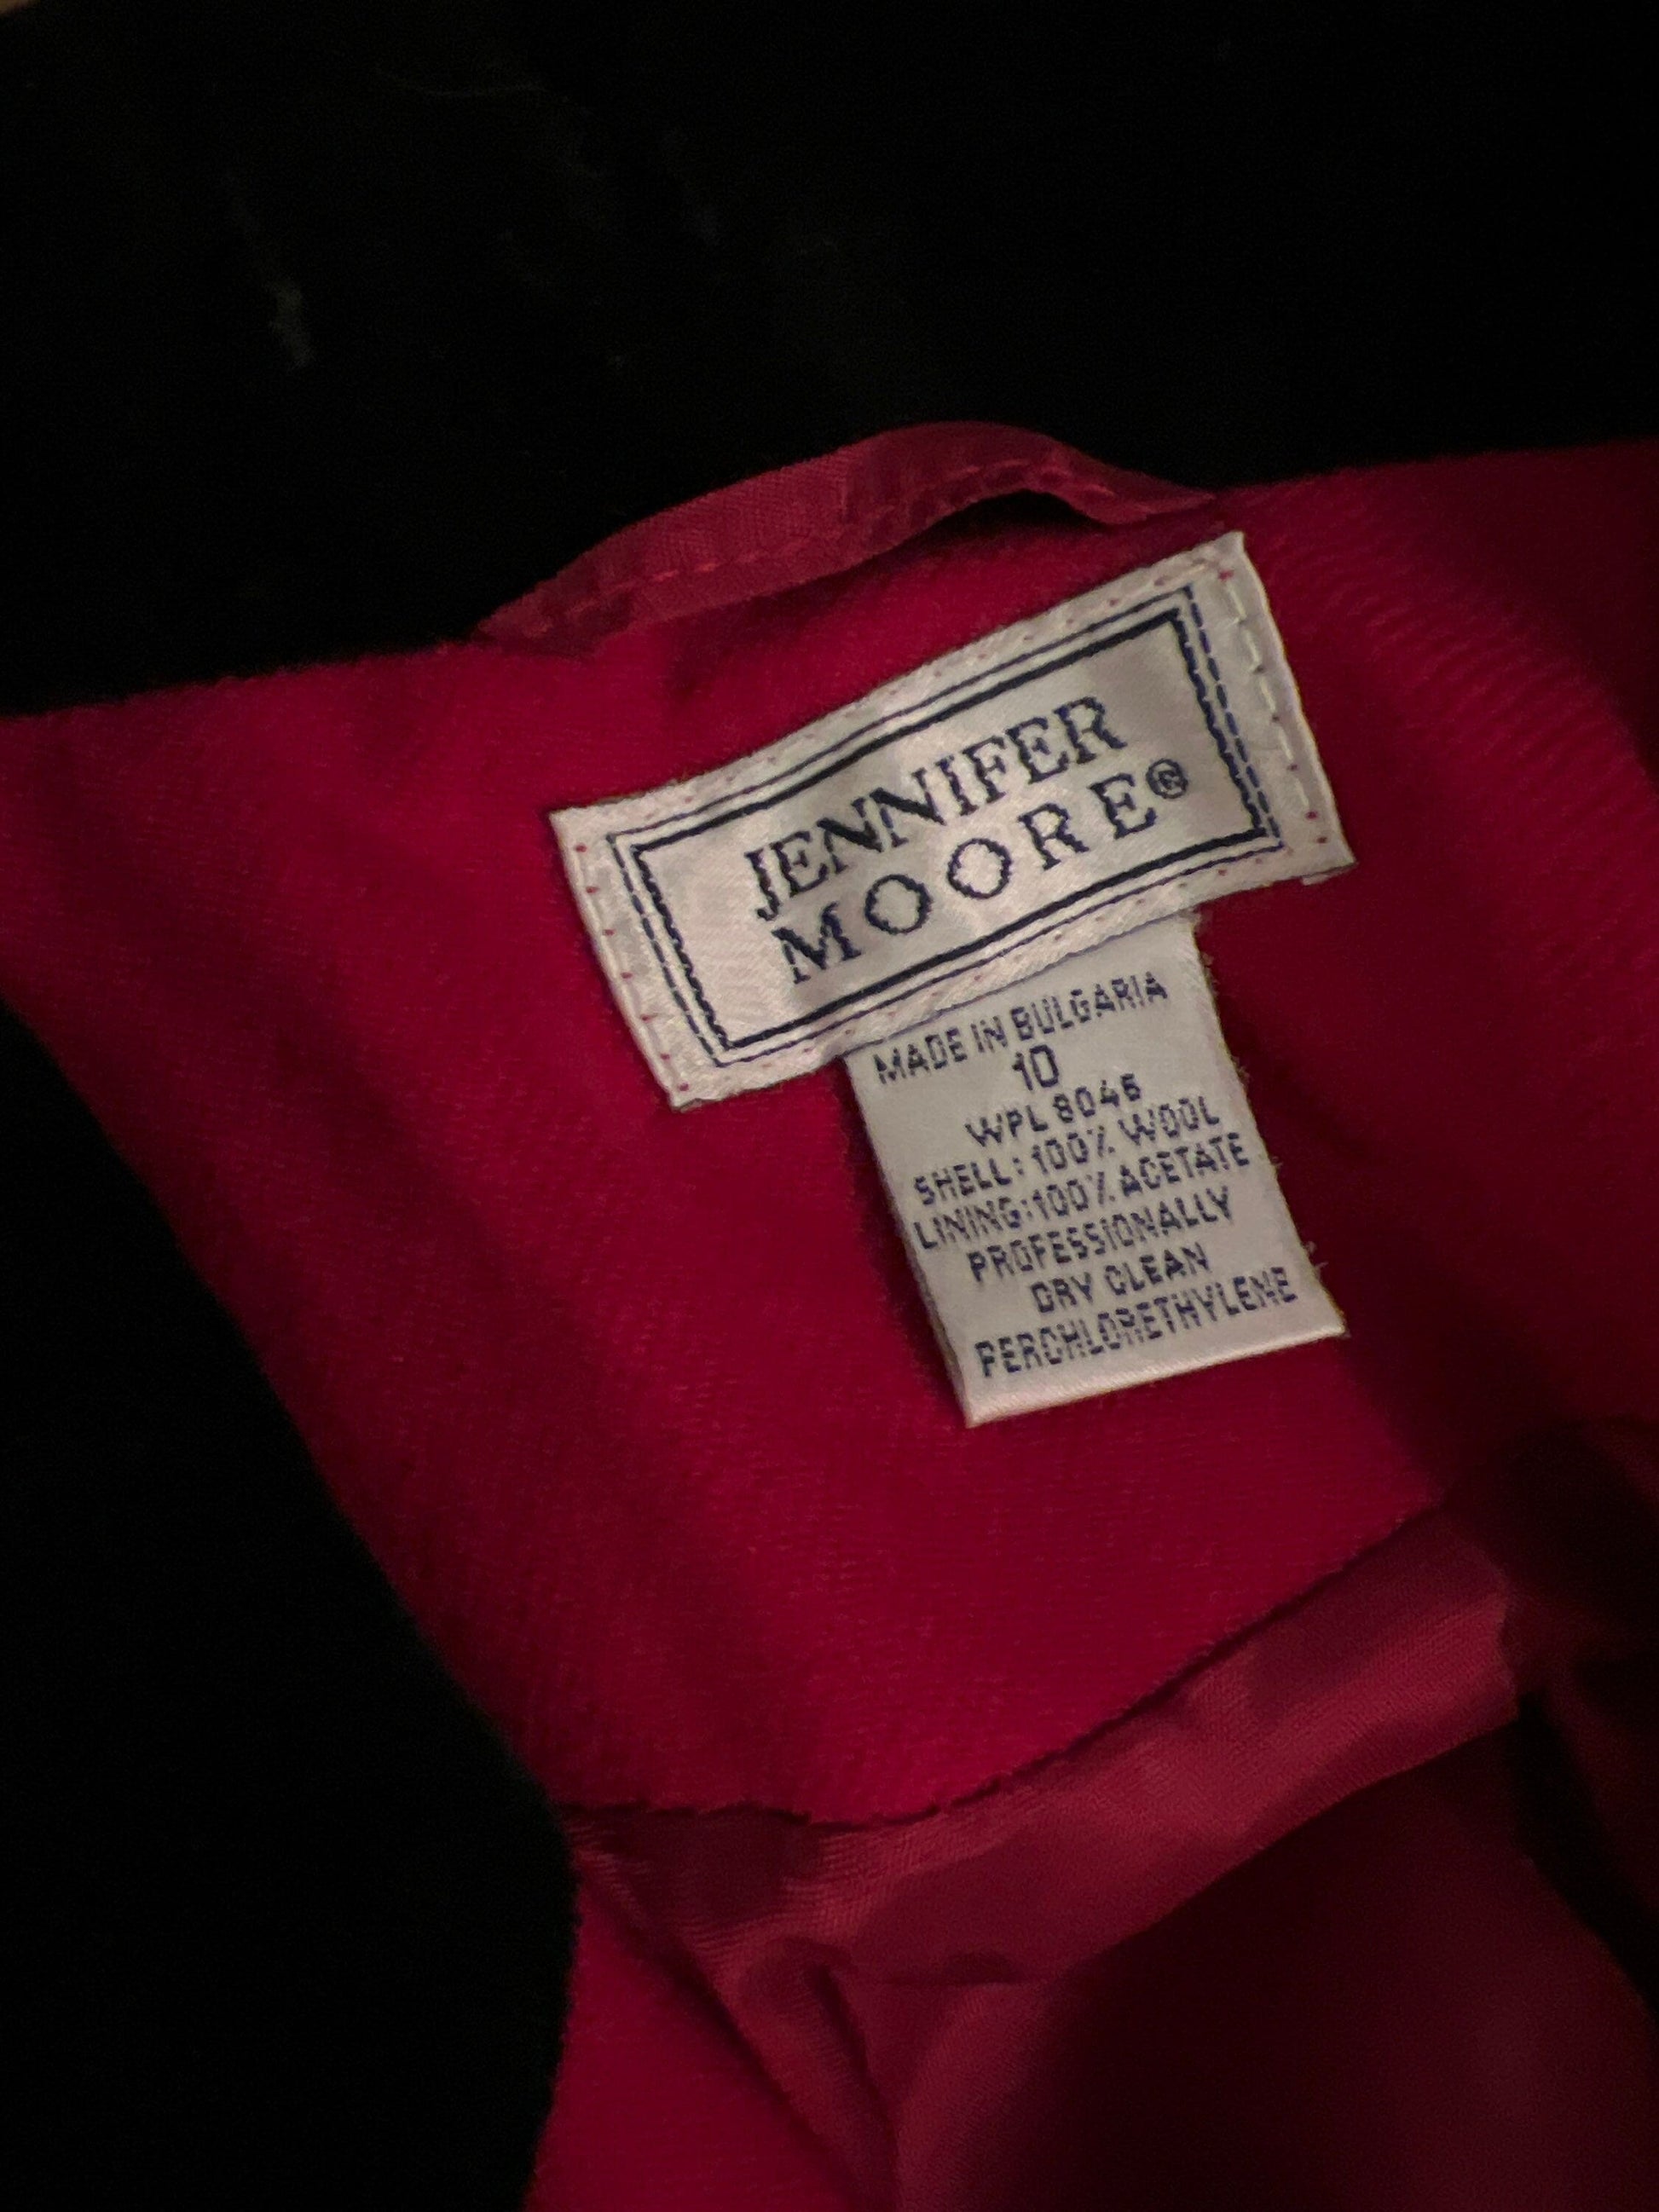 Vintage Red Riding Jacket Black collars Scarlet Blazer Jacket - excellent condition Jennifer Moore US10